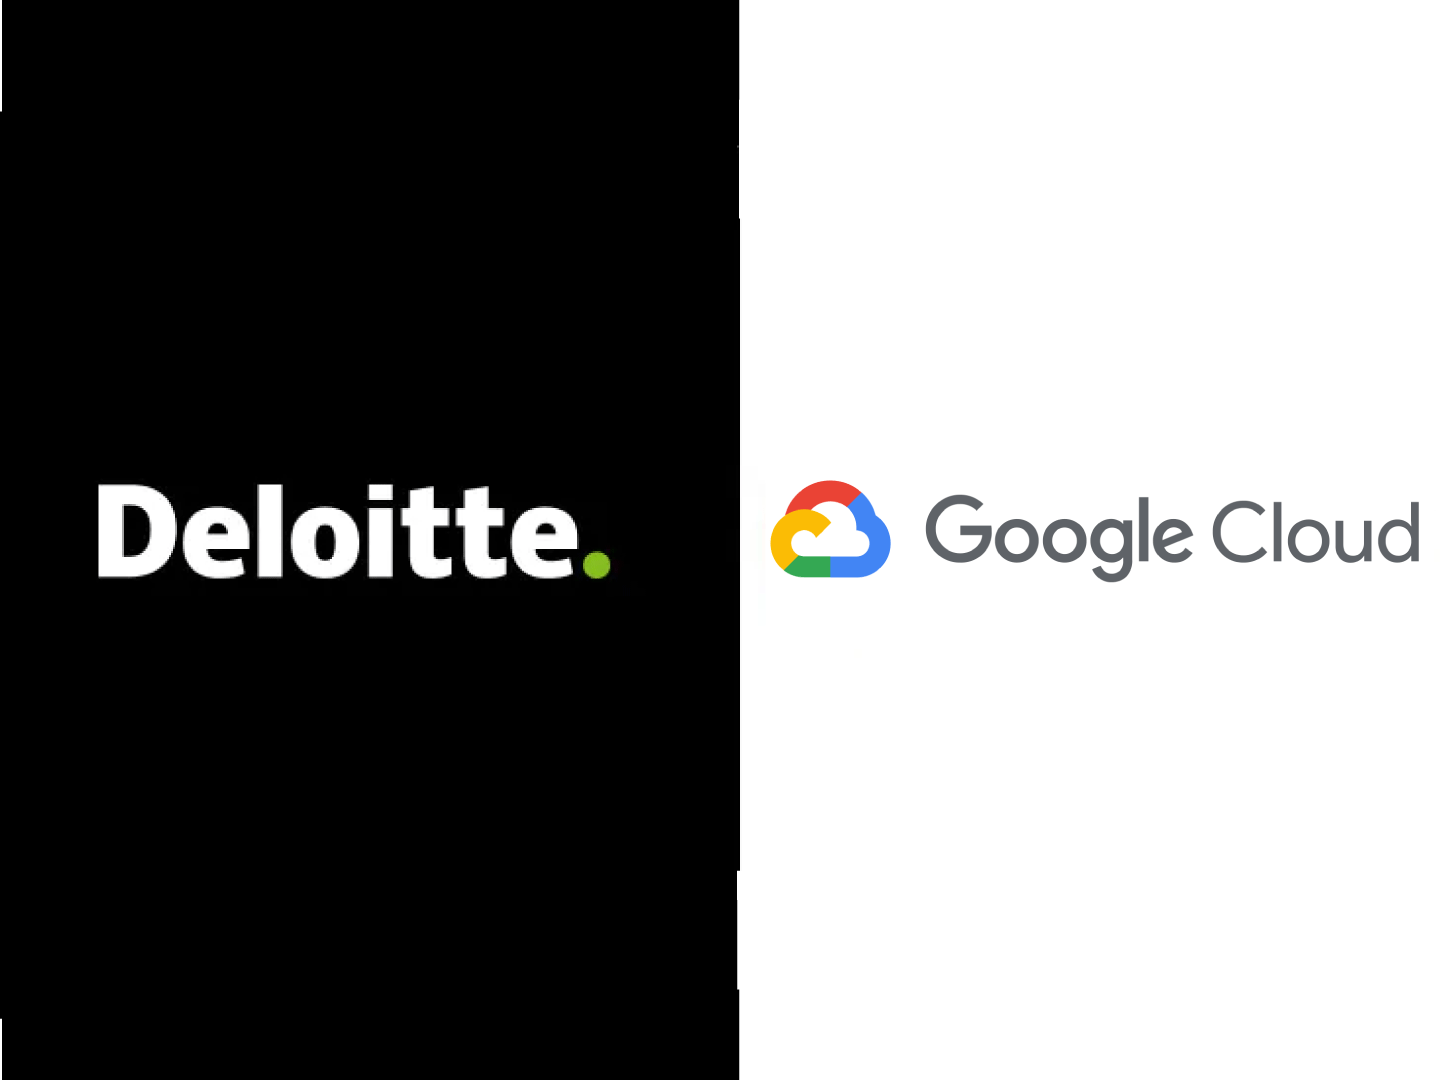 Deloitte and Google extend cloud partnership